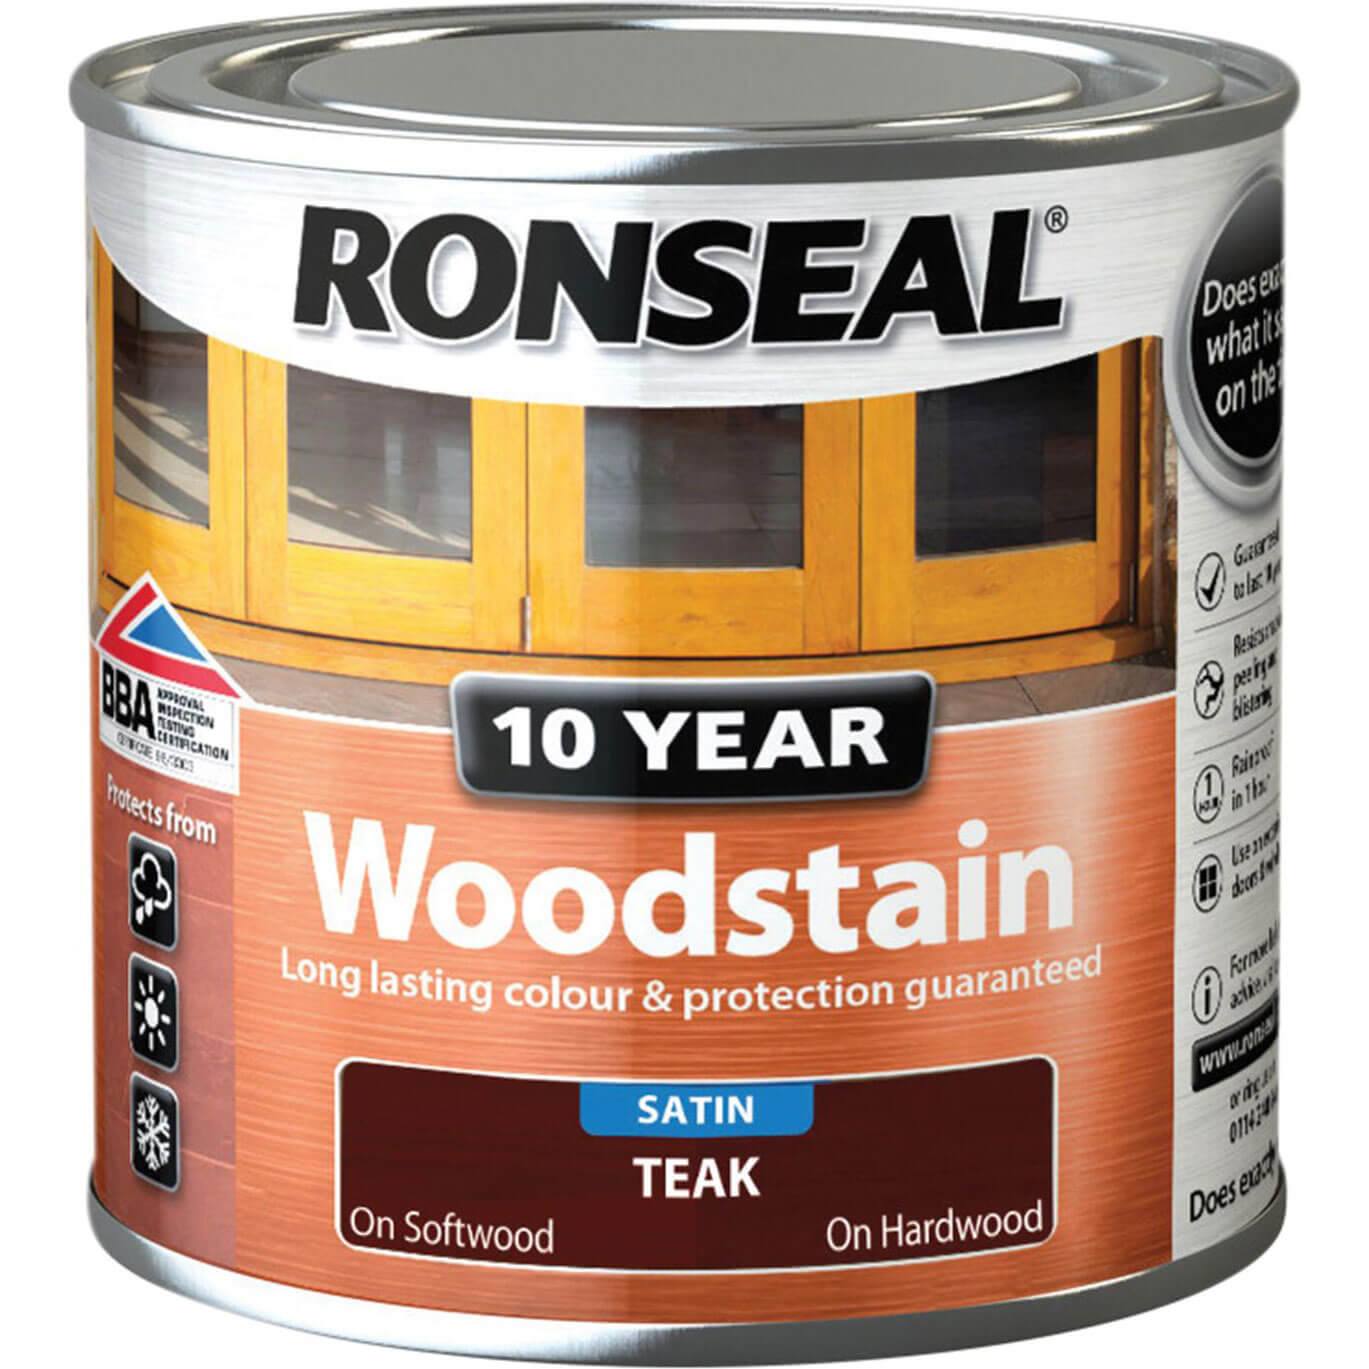 Ronseal 10 Year Wood Stain Teak 250ml